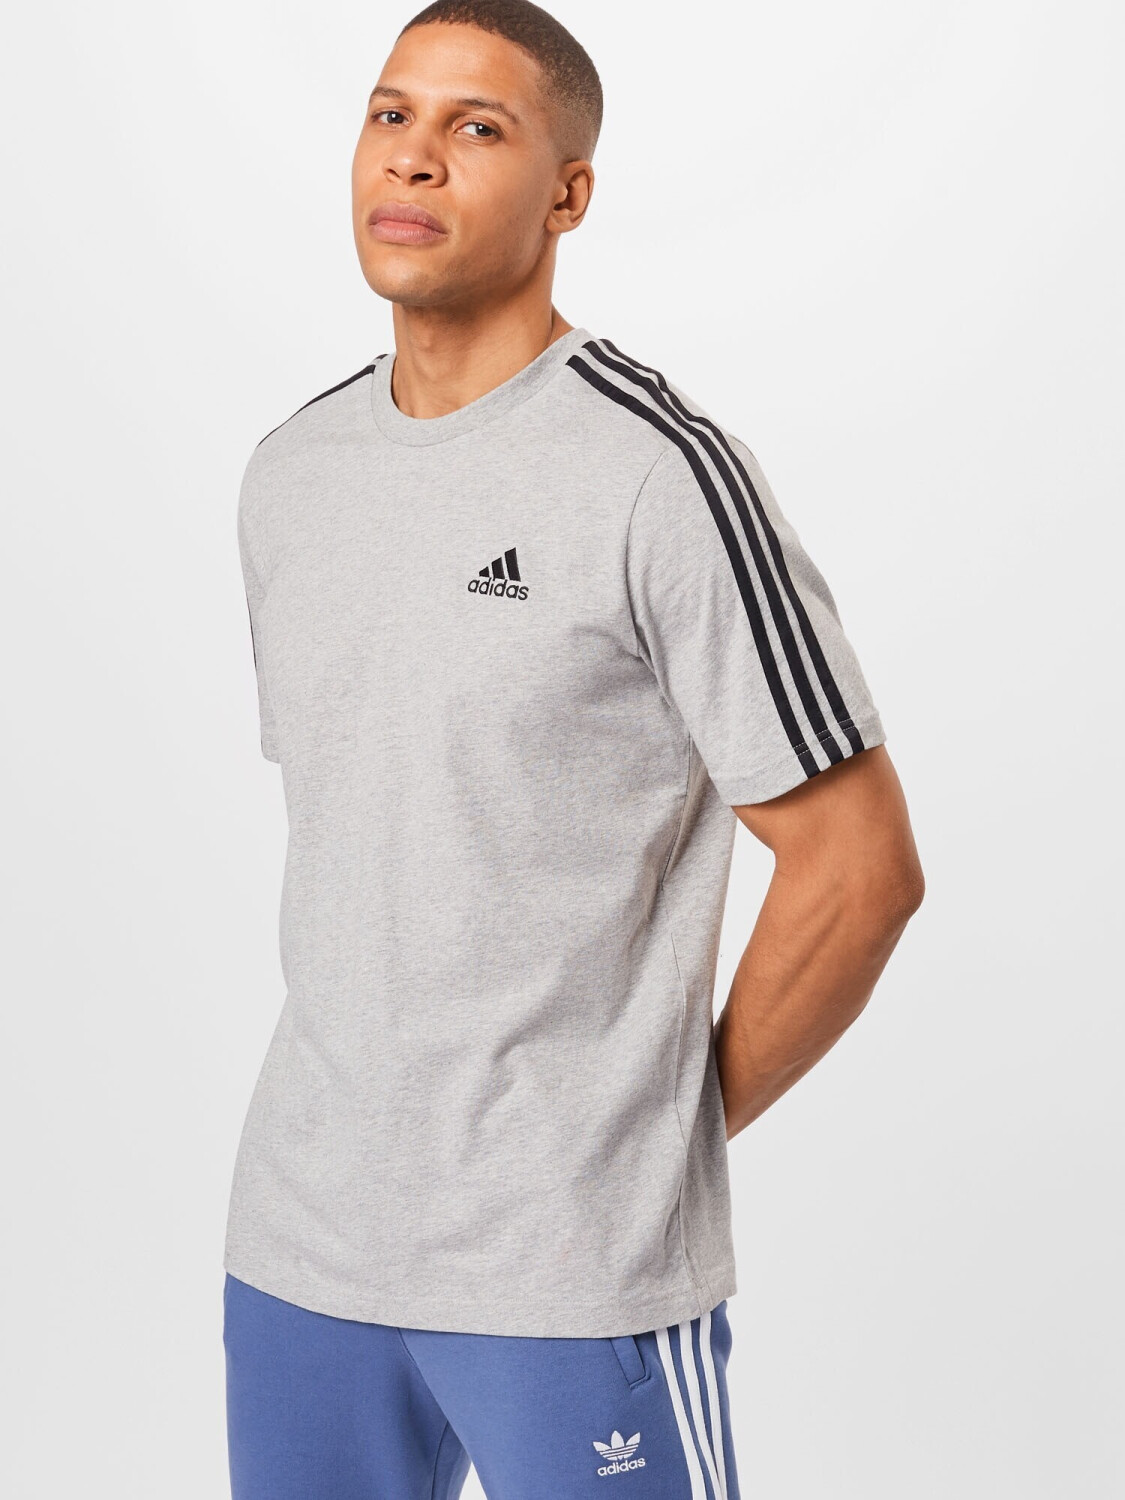 Buy Adidas Essentials 3-Stripes T-Shirt (GL3735) medium grey heather ...